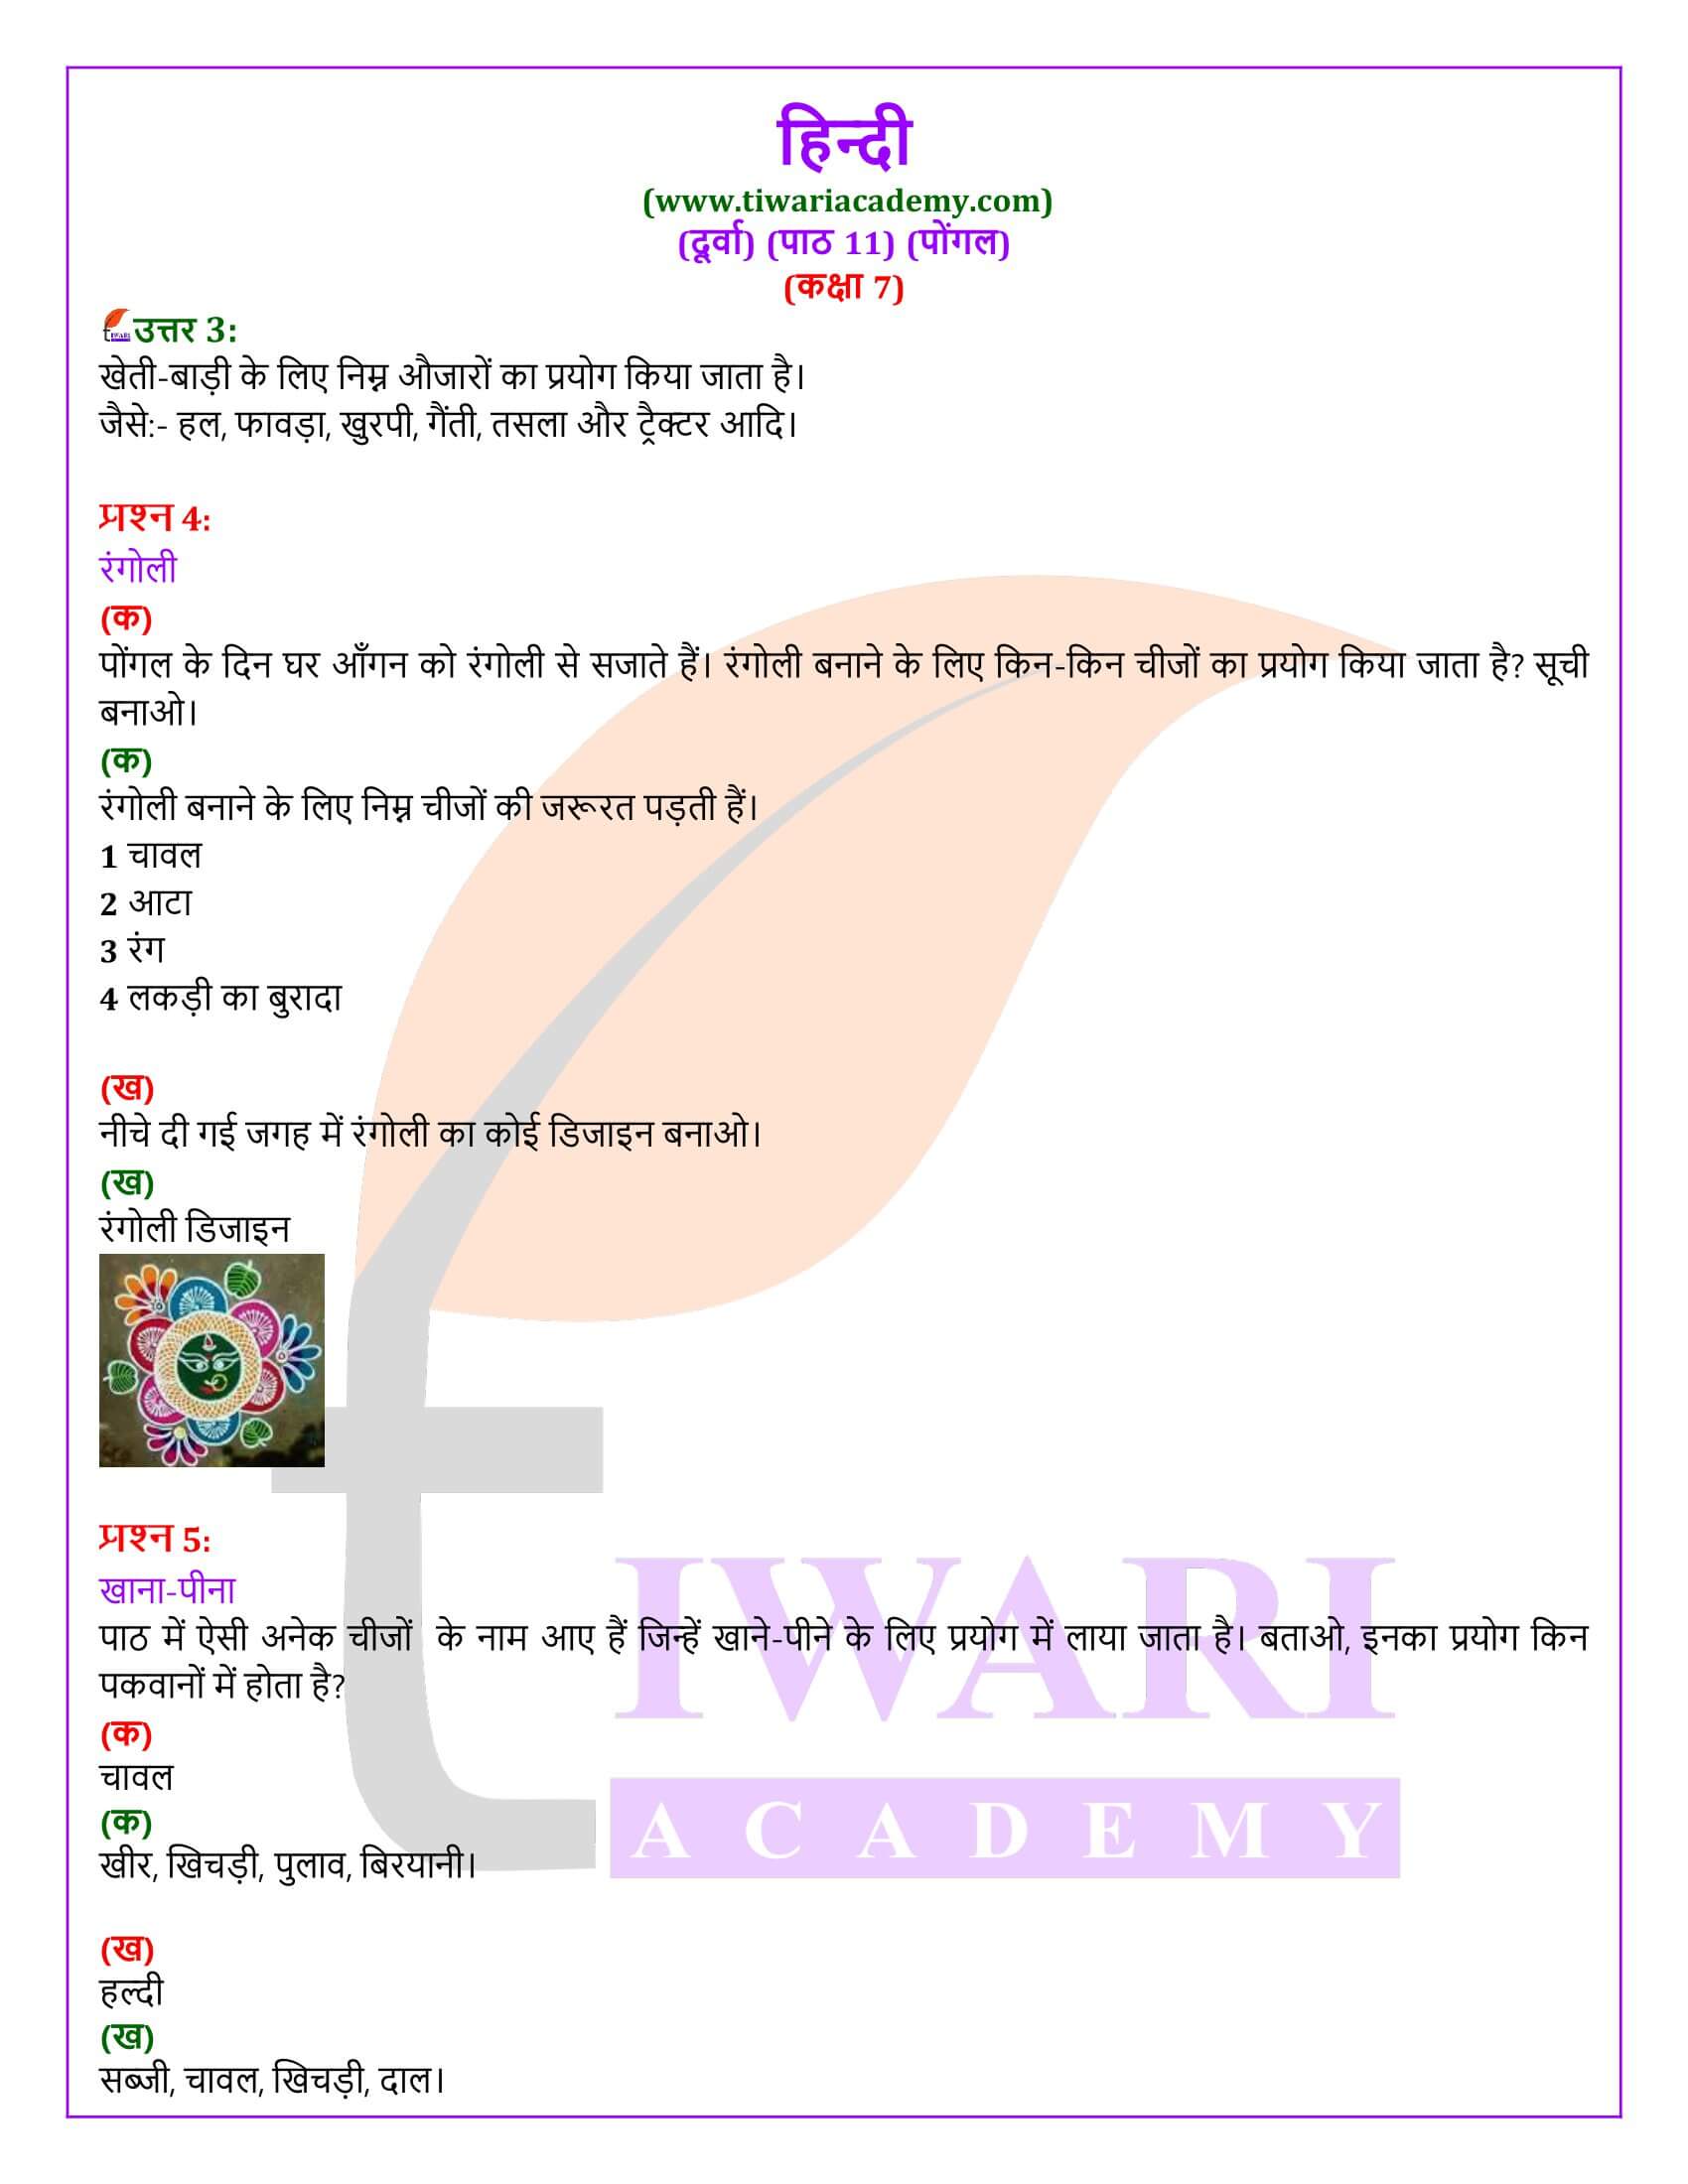 कक्षा 7 हिंदी दूर्वा अध्याय 11 पोंगल के उत्तर